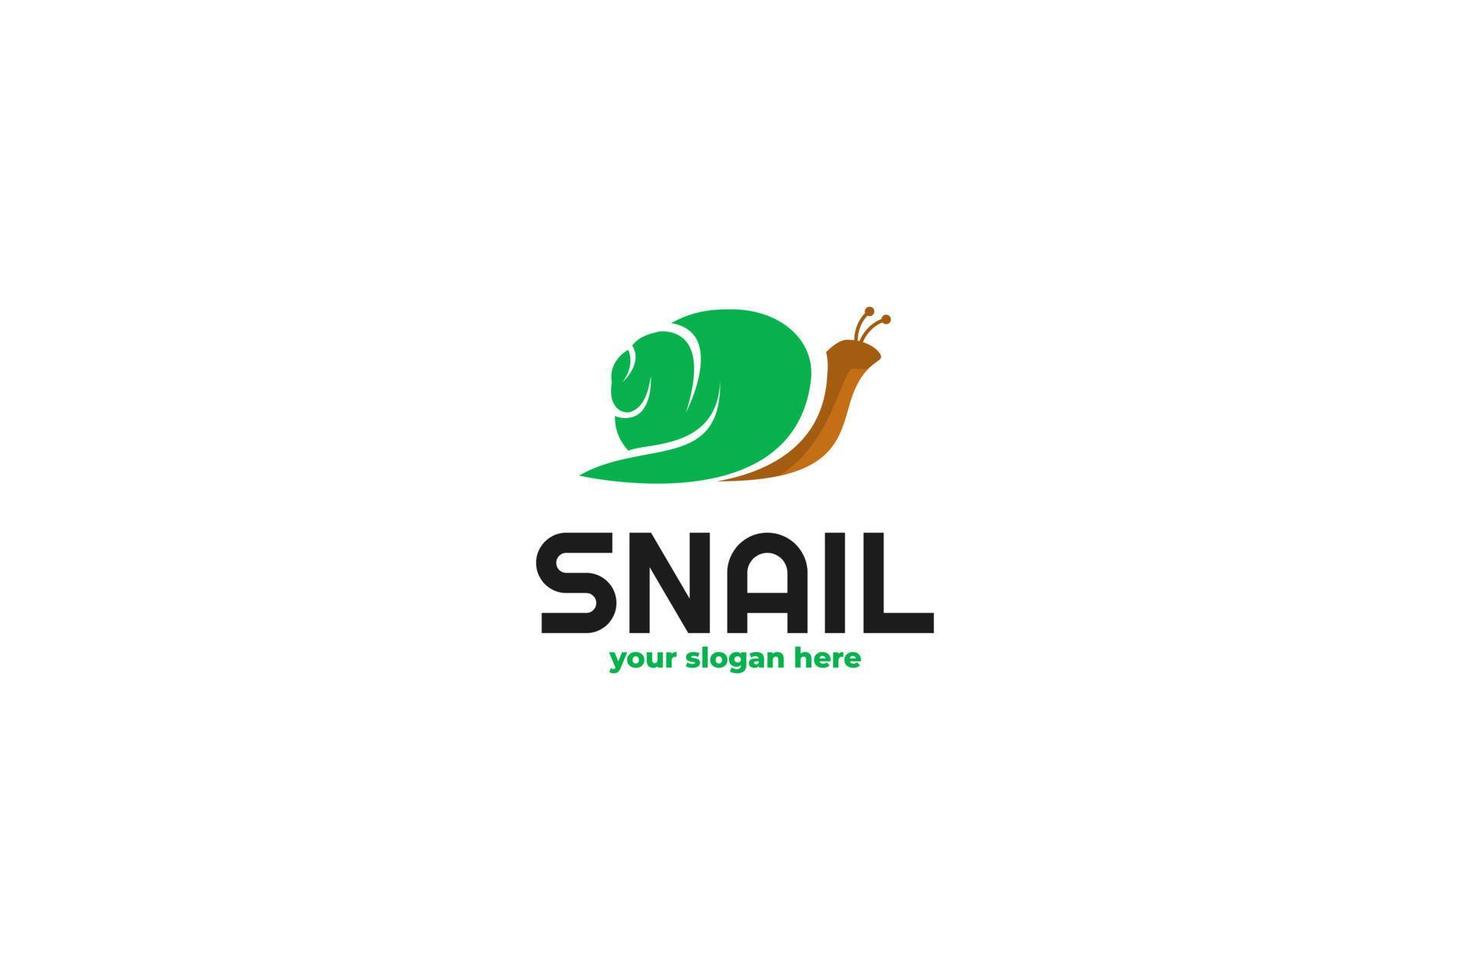 Green circle home snail logo design inspiration vector